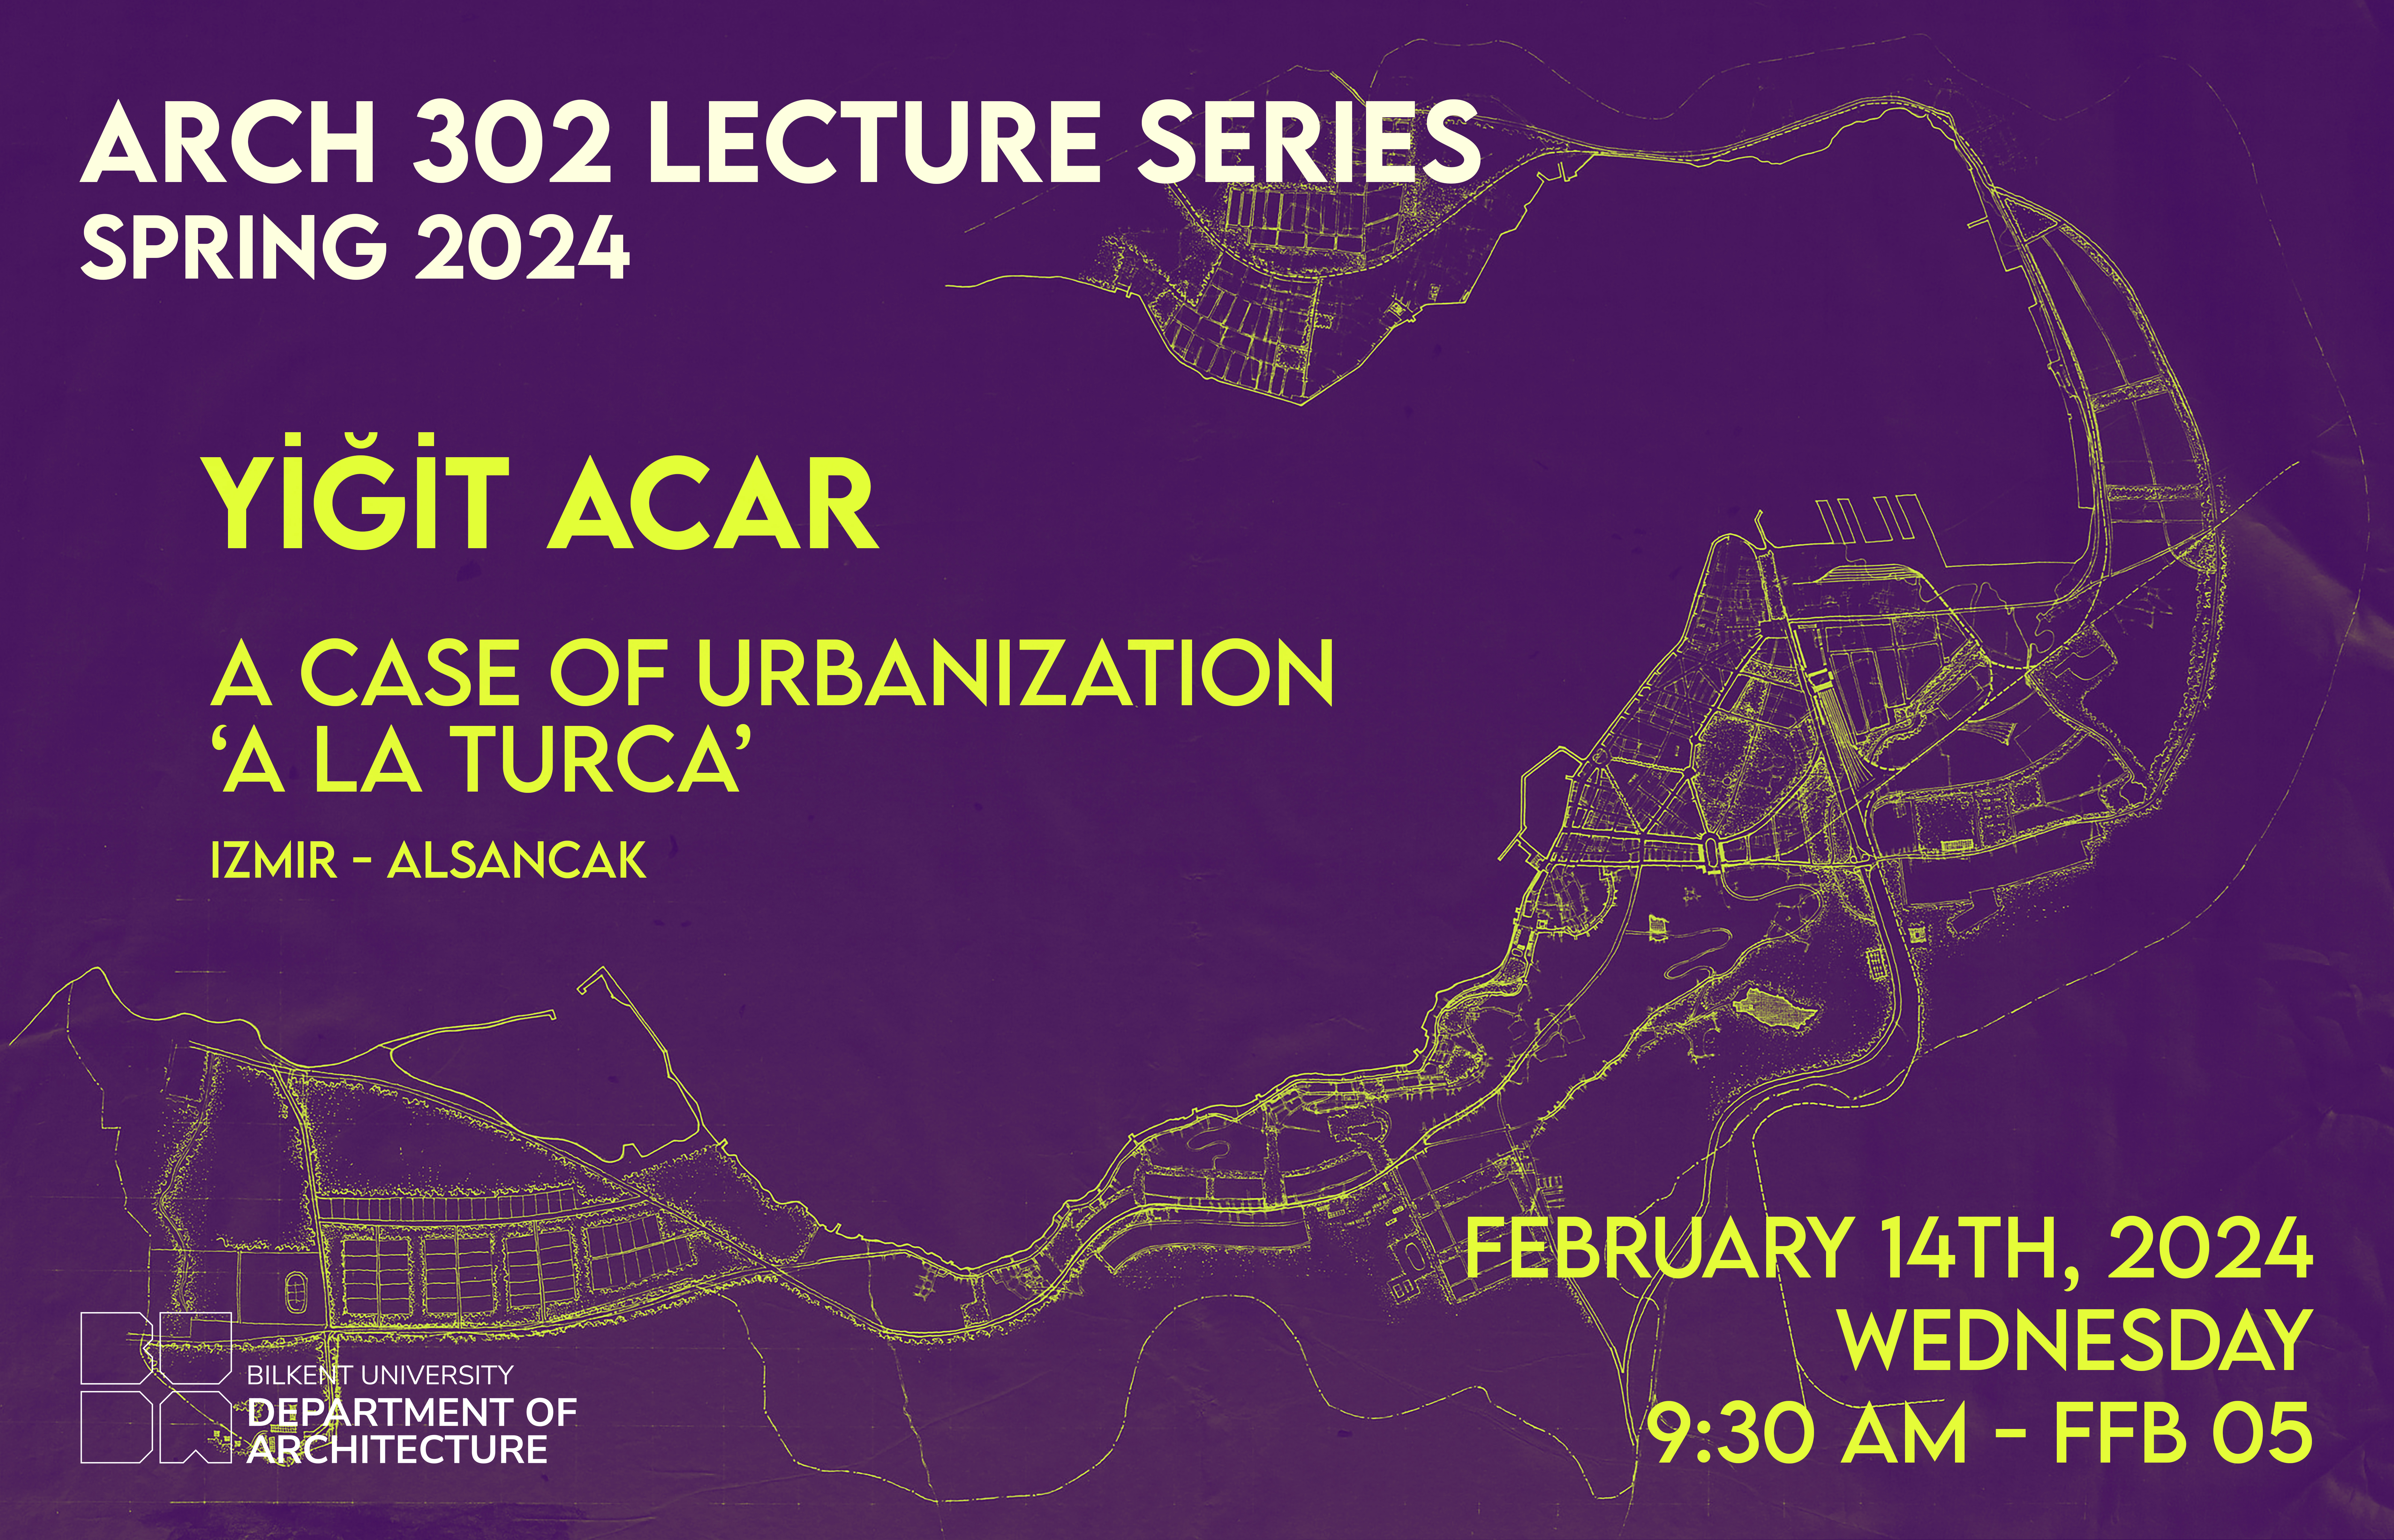 A Case of Urbanization “A la Turca”: Izmir Alsancak